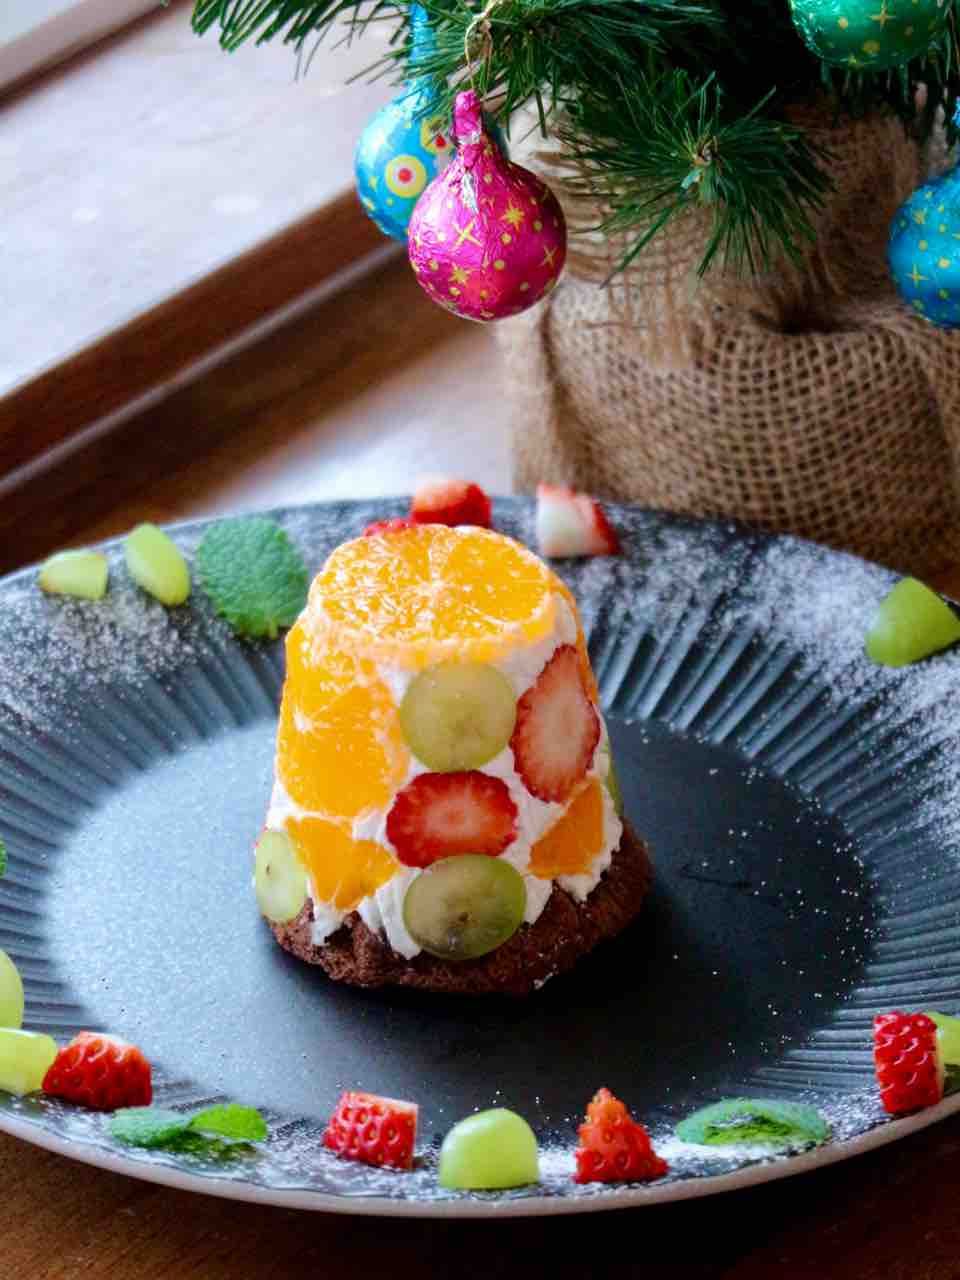 本日のスイーツ・クリスマスフルーツドームケーキ : Cafe Cherryblossom